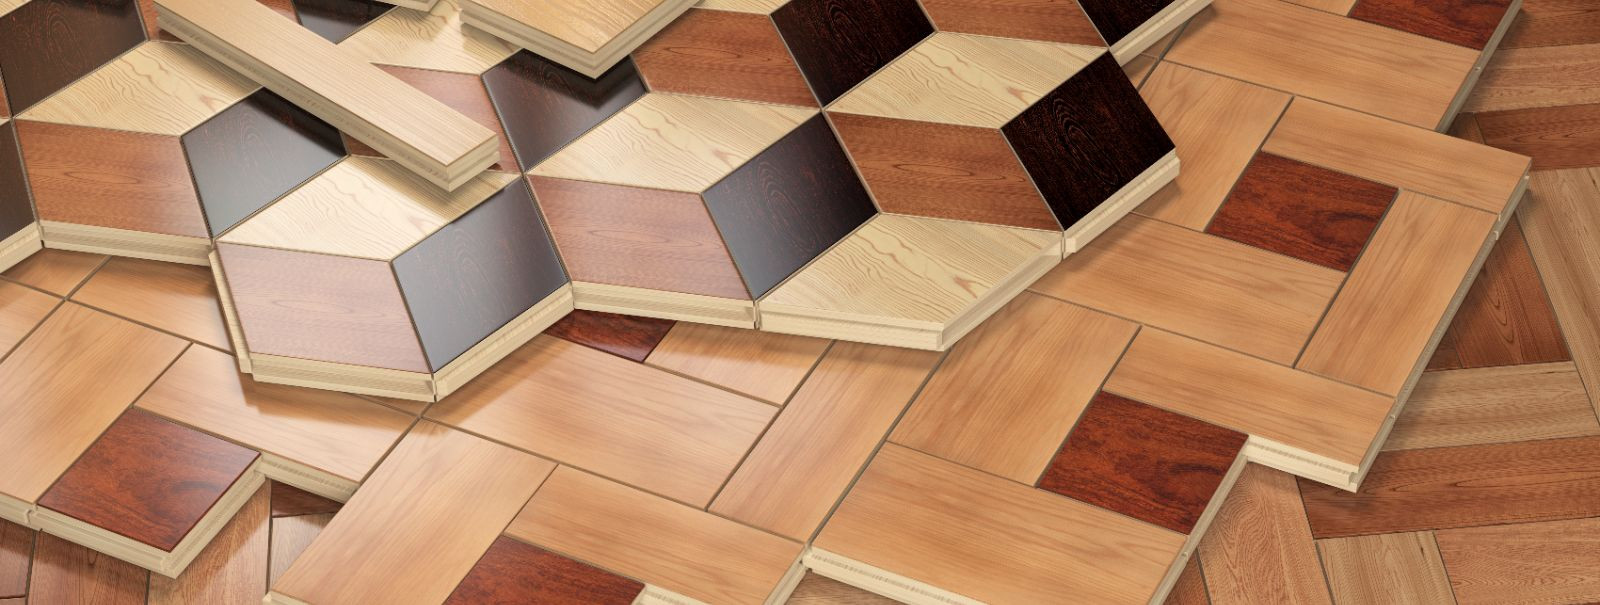 Põrandakatted on igas kodus oluline element, mis täidavad nii funktsionaalseid kui ka esteetilisi eesmärke. Need võivad anda toale tooni, pakkuda mugavust jalge